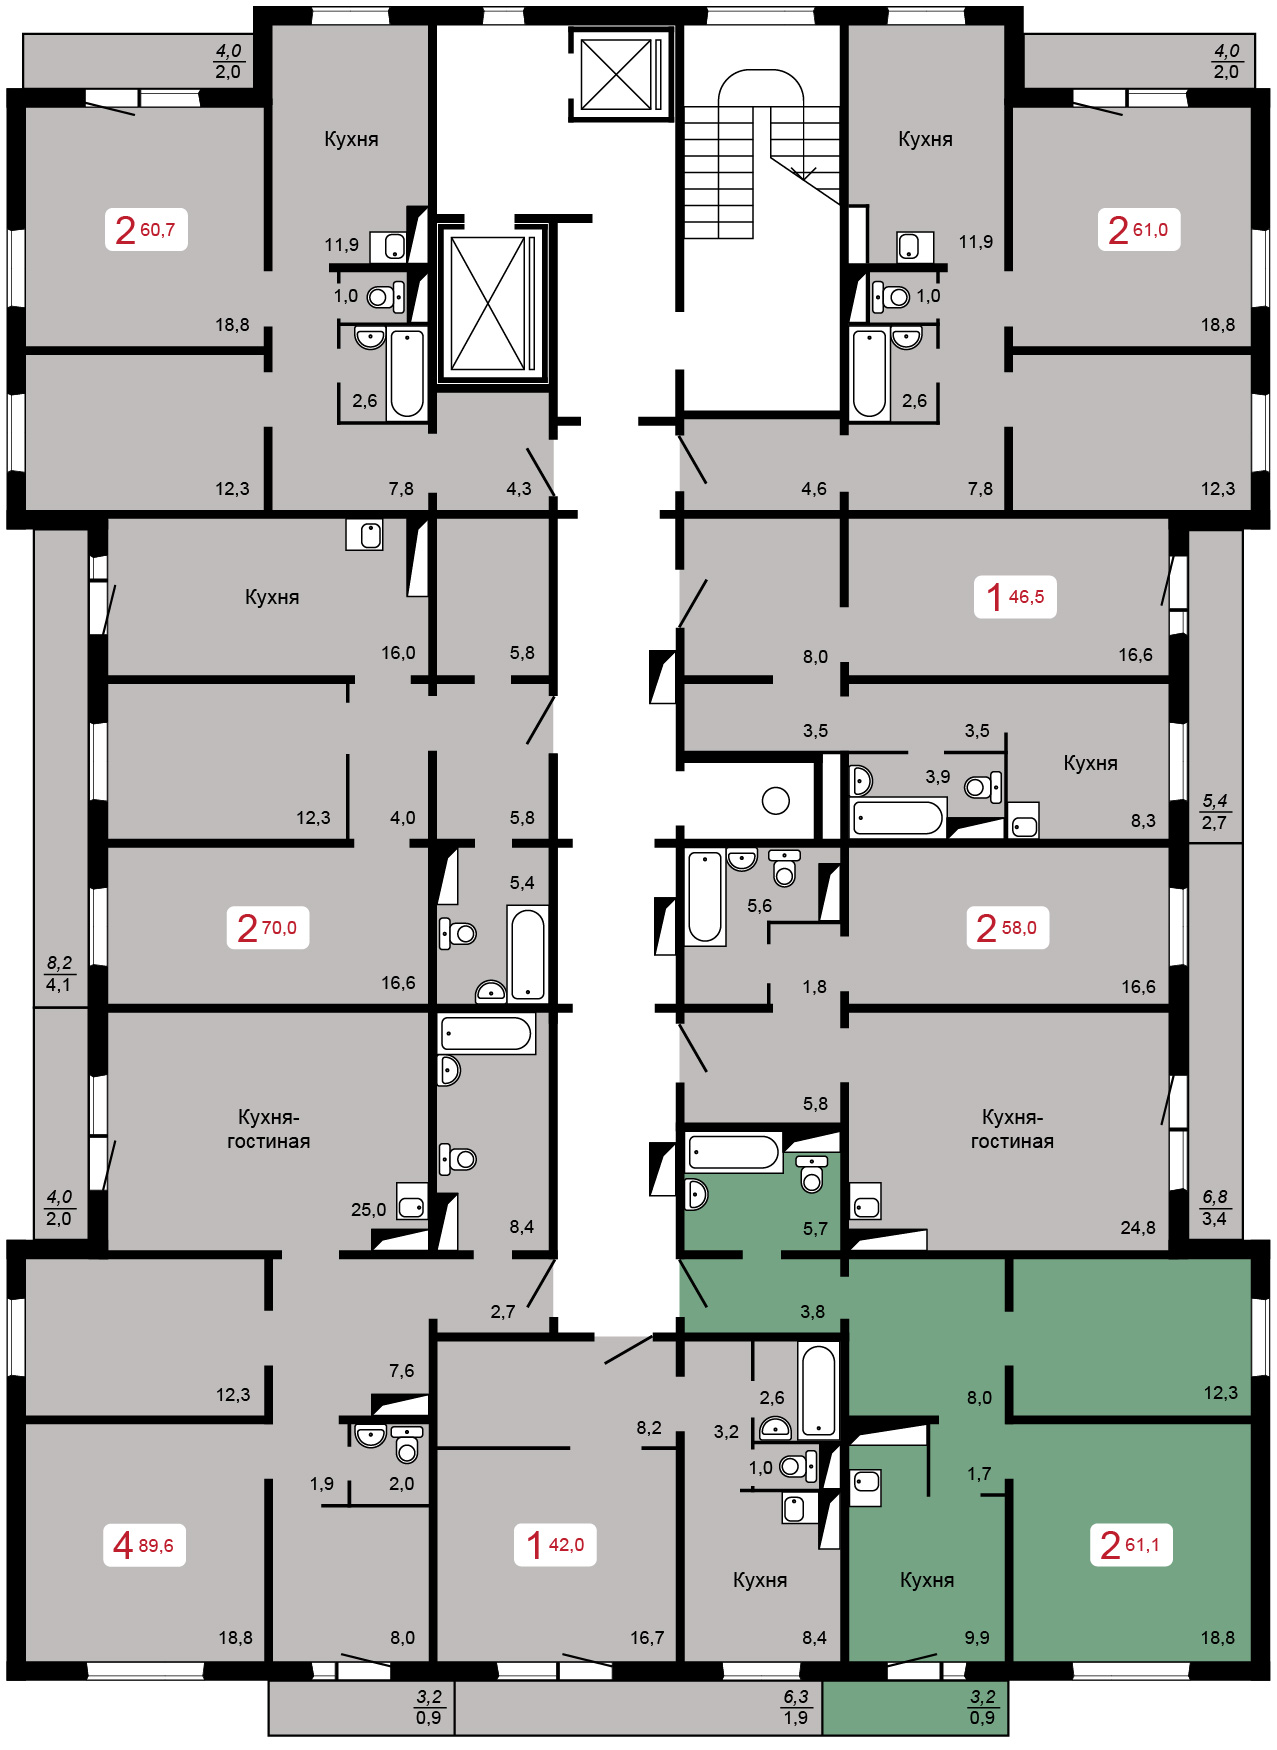 Дом 11,1 - 2-16 этажи